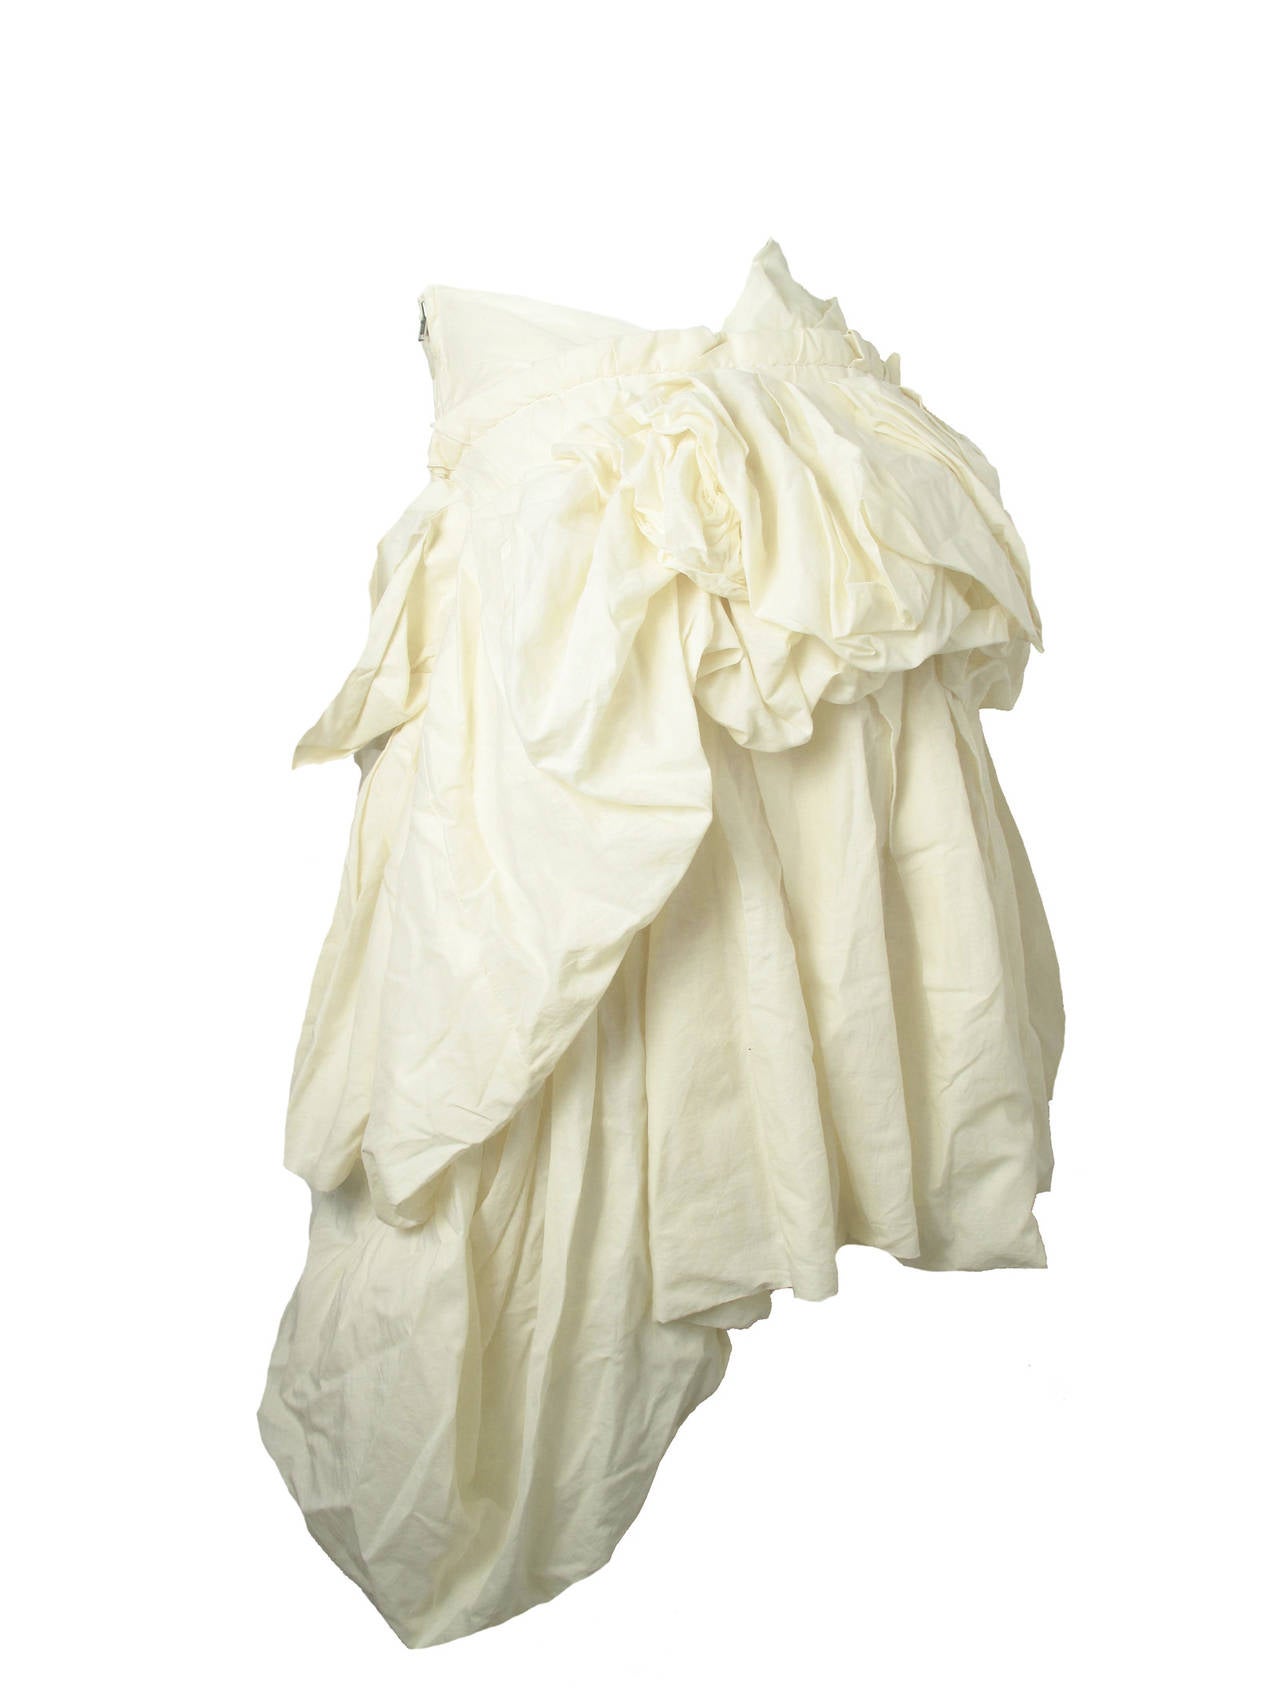 2005 Comme des Garçons Muslin deconstructed skirt 1